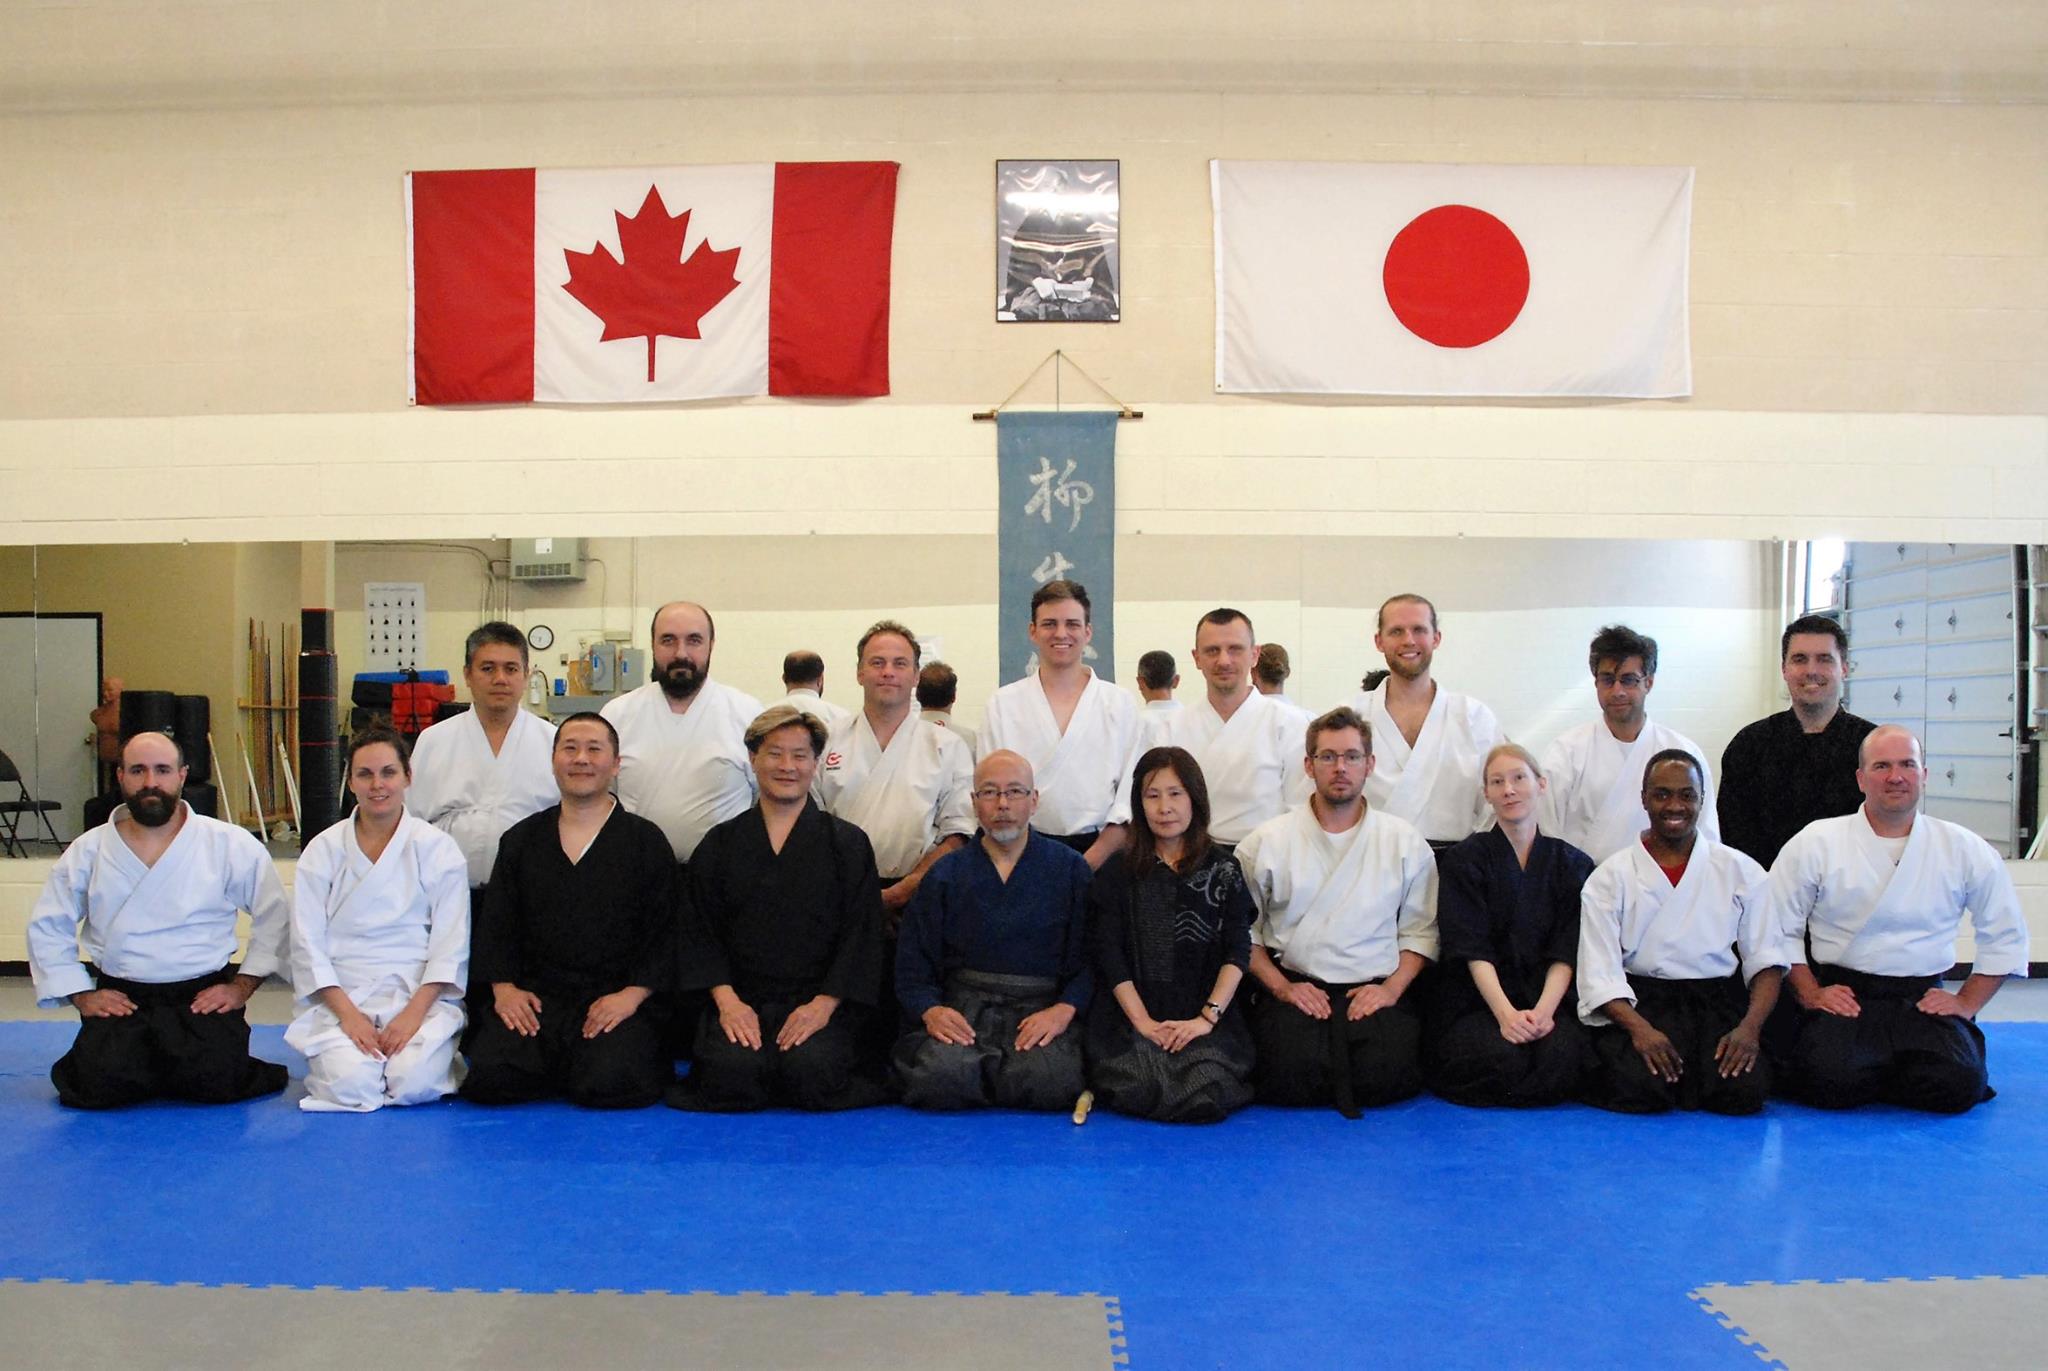 The Canadian Yagyu Shinkage Ryu 2016 Seminar Group